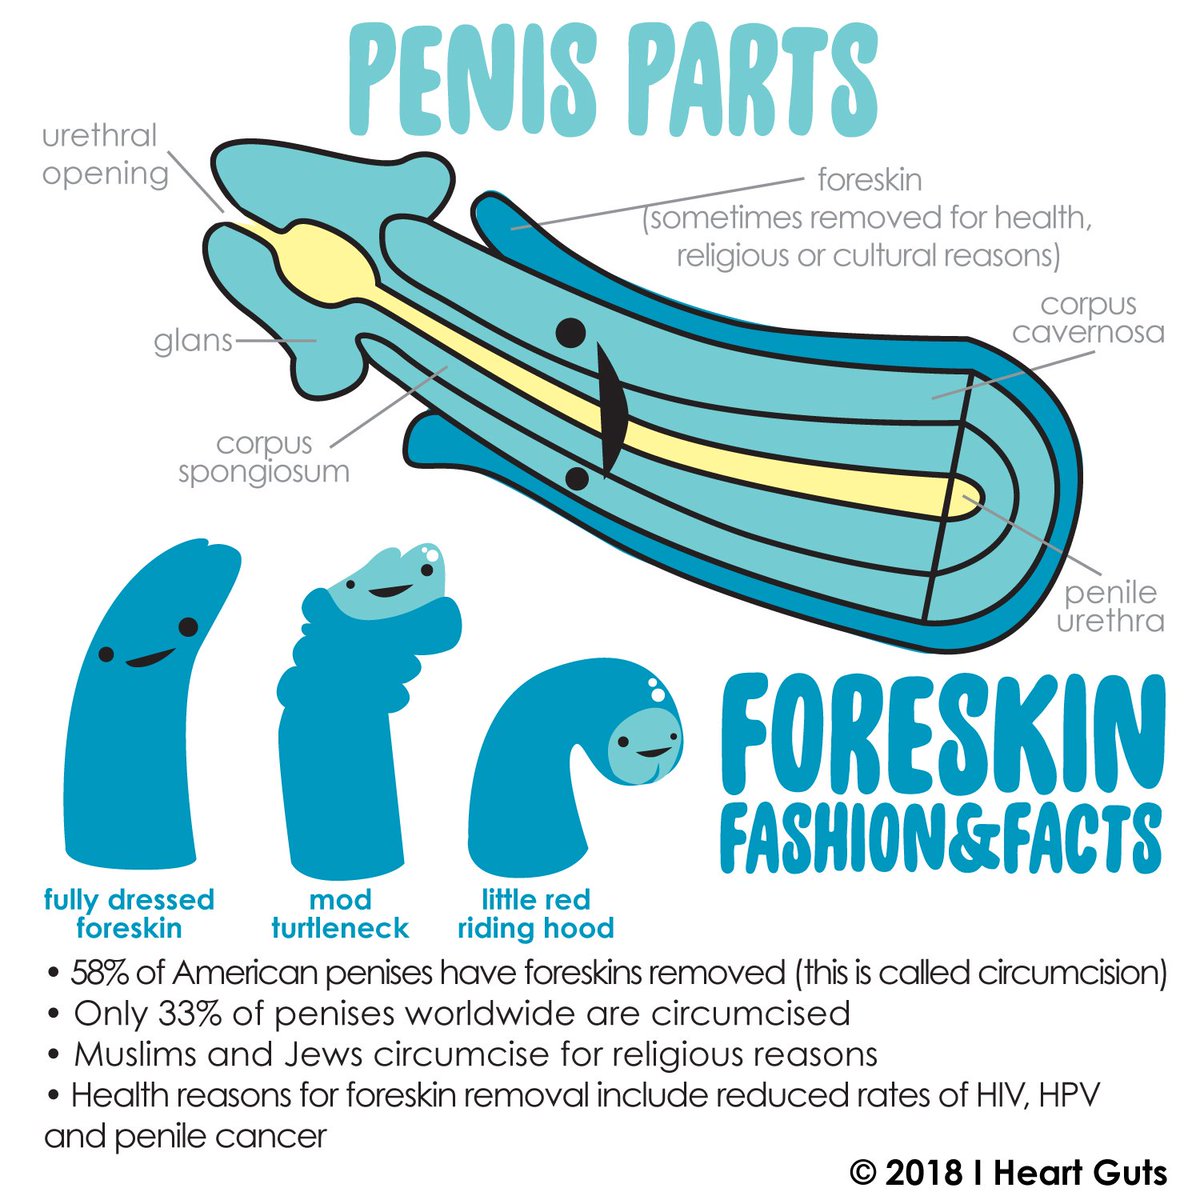 Most sensitive parts of a penis